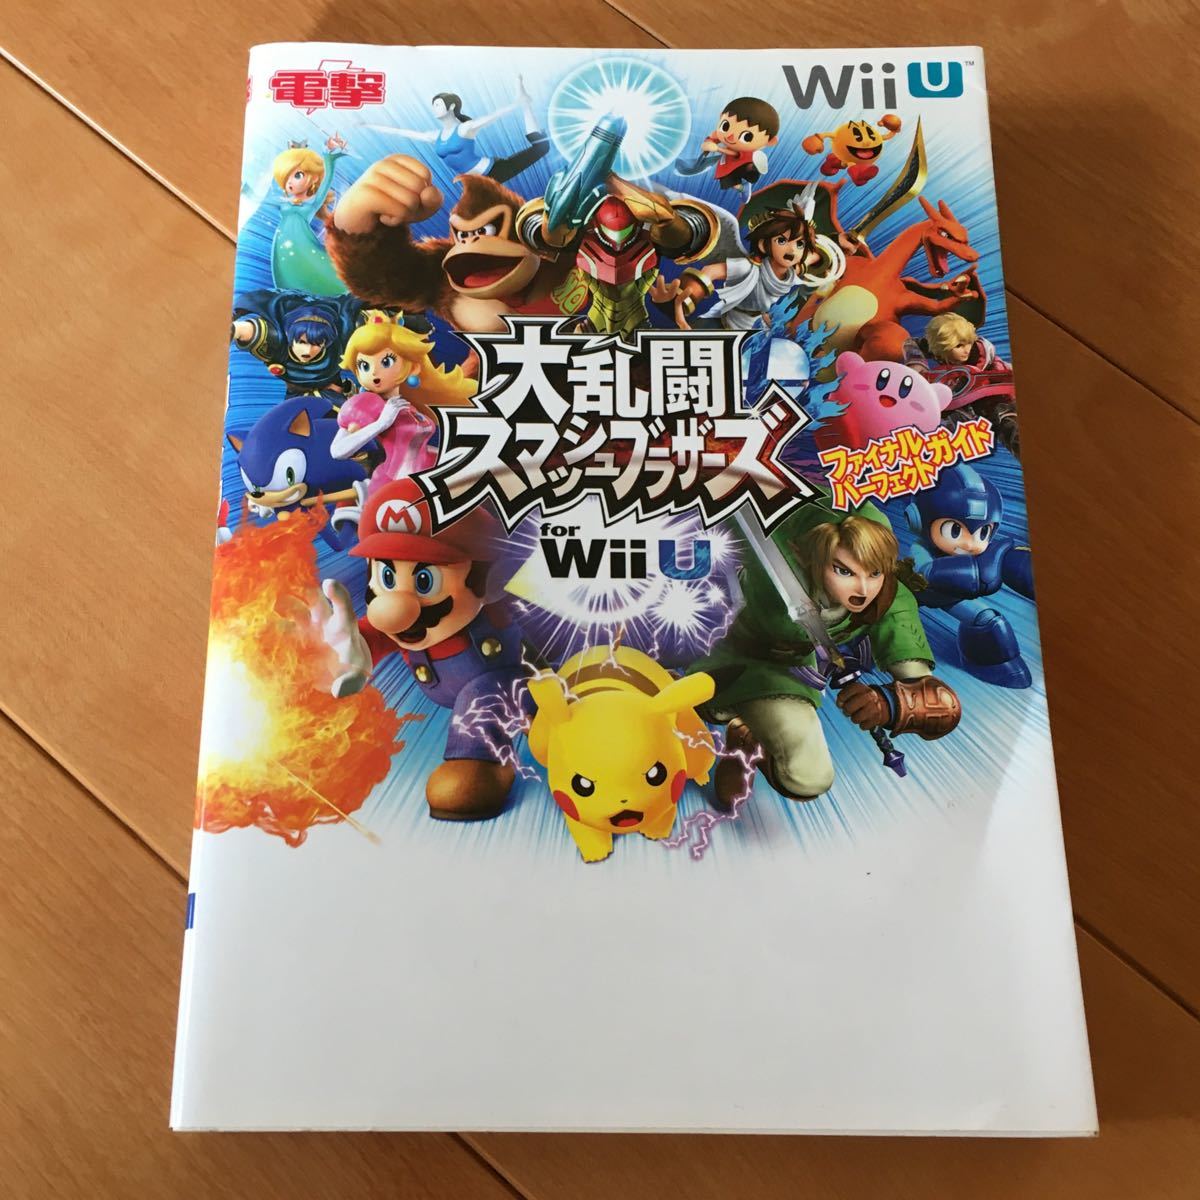 攻略本 大乱闘スマッシュブラザーズfor Wii U